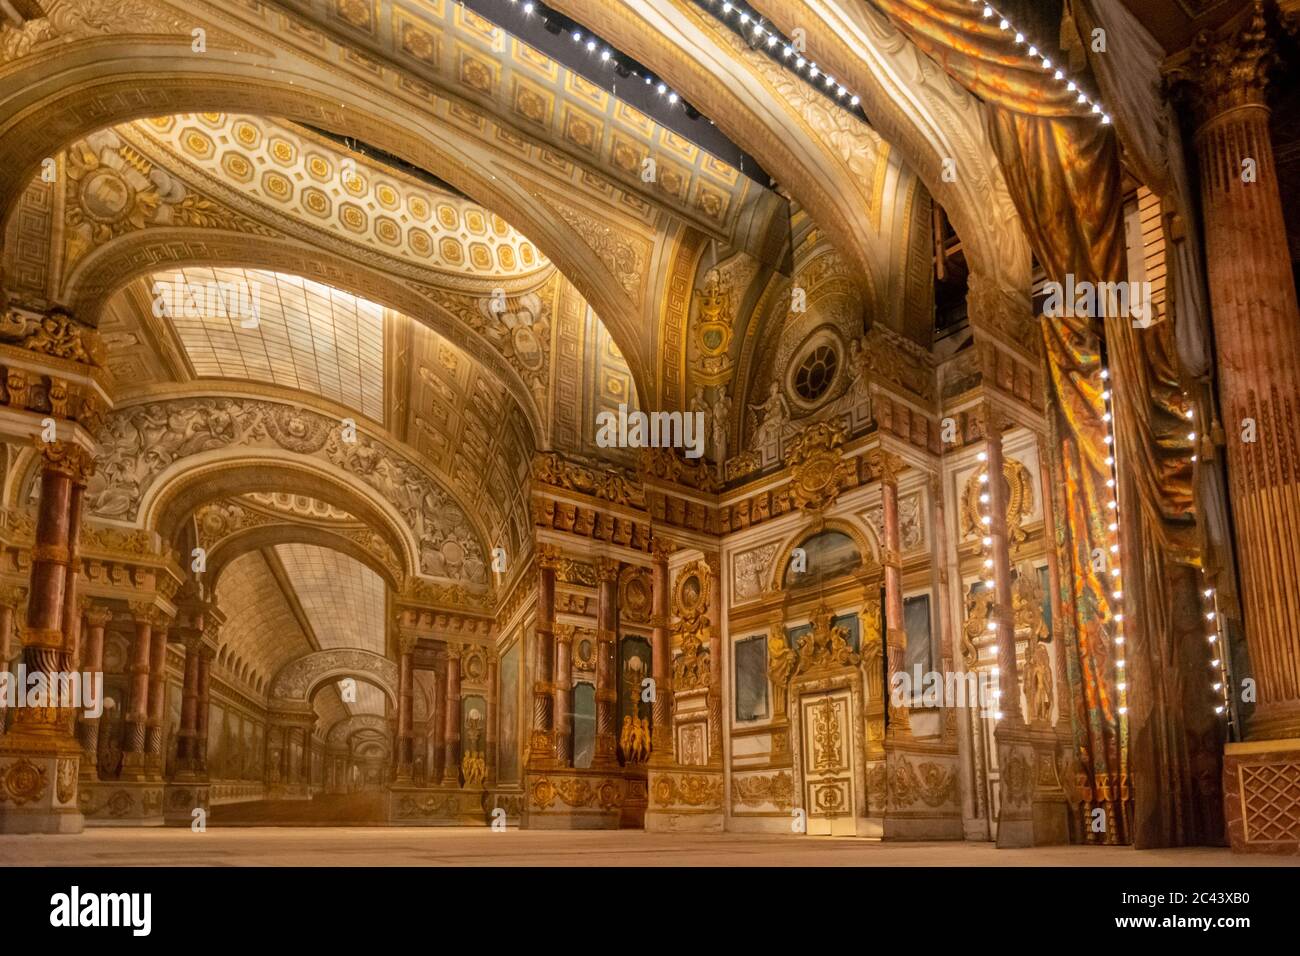 Versailles, Francia - 27 agosto 2019: Opera reale al Palazzo di Versailles. È stato aggiunto alla lista dei siti Patrimonio dell'Umanità dell'UNESCO. Foto Stock